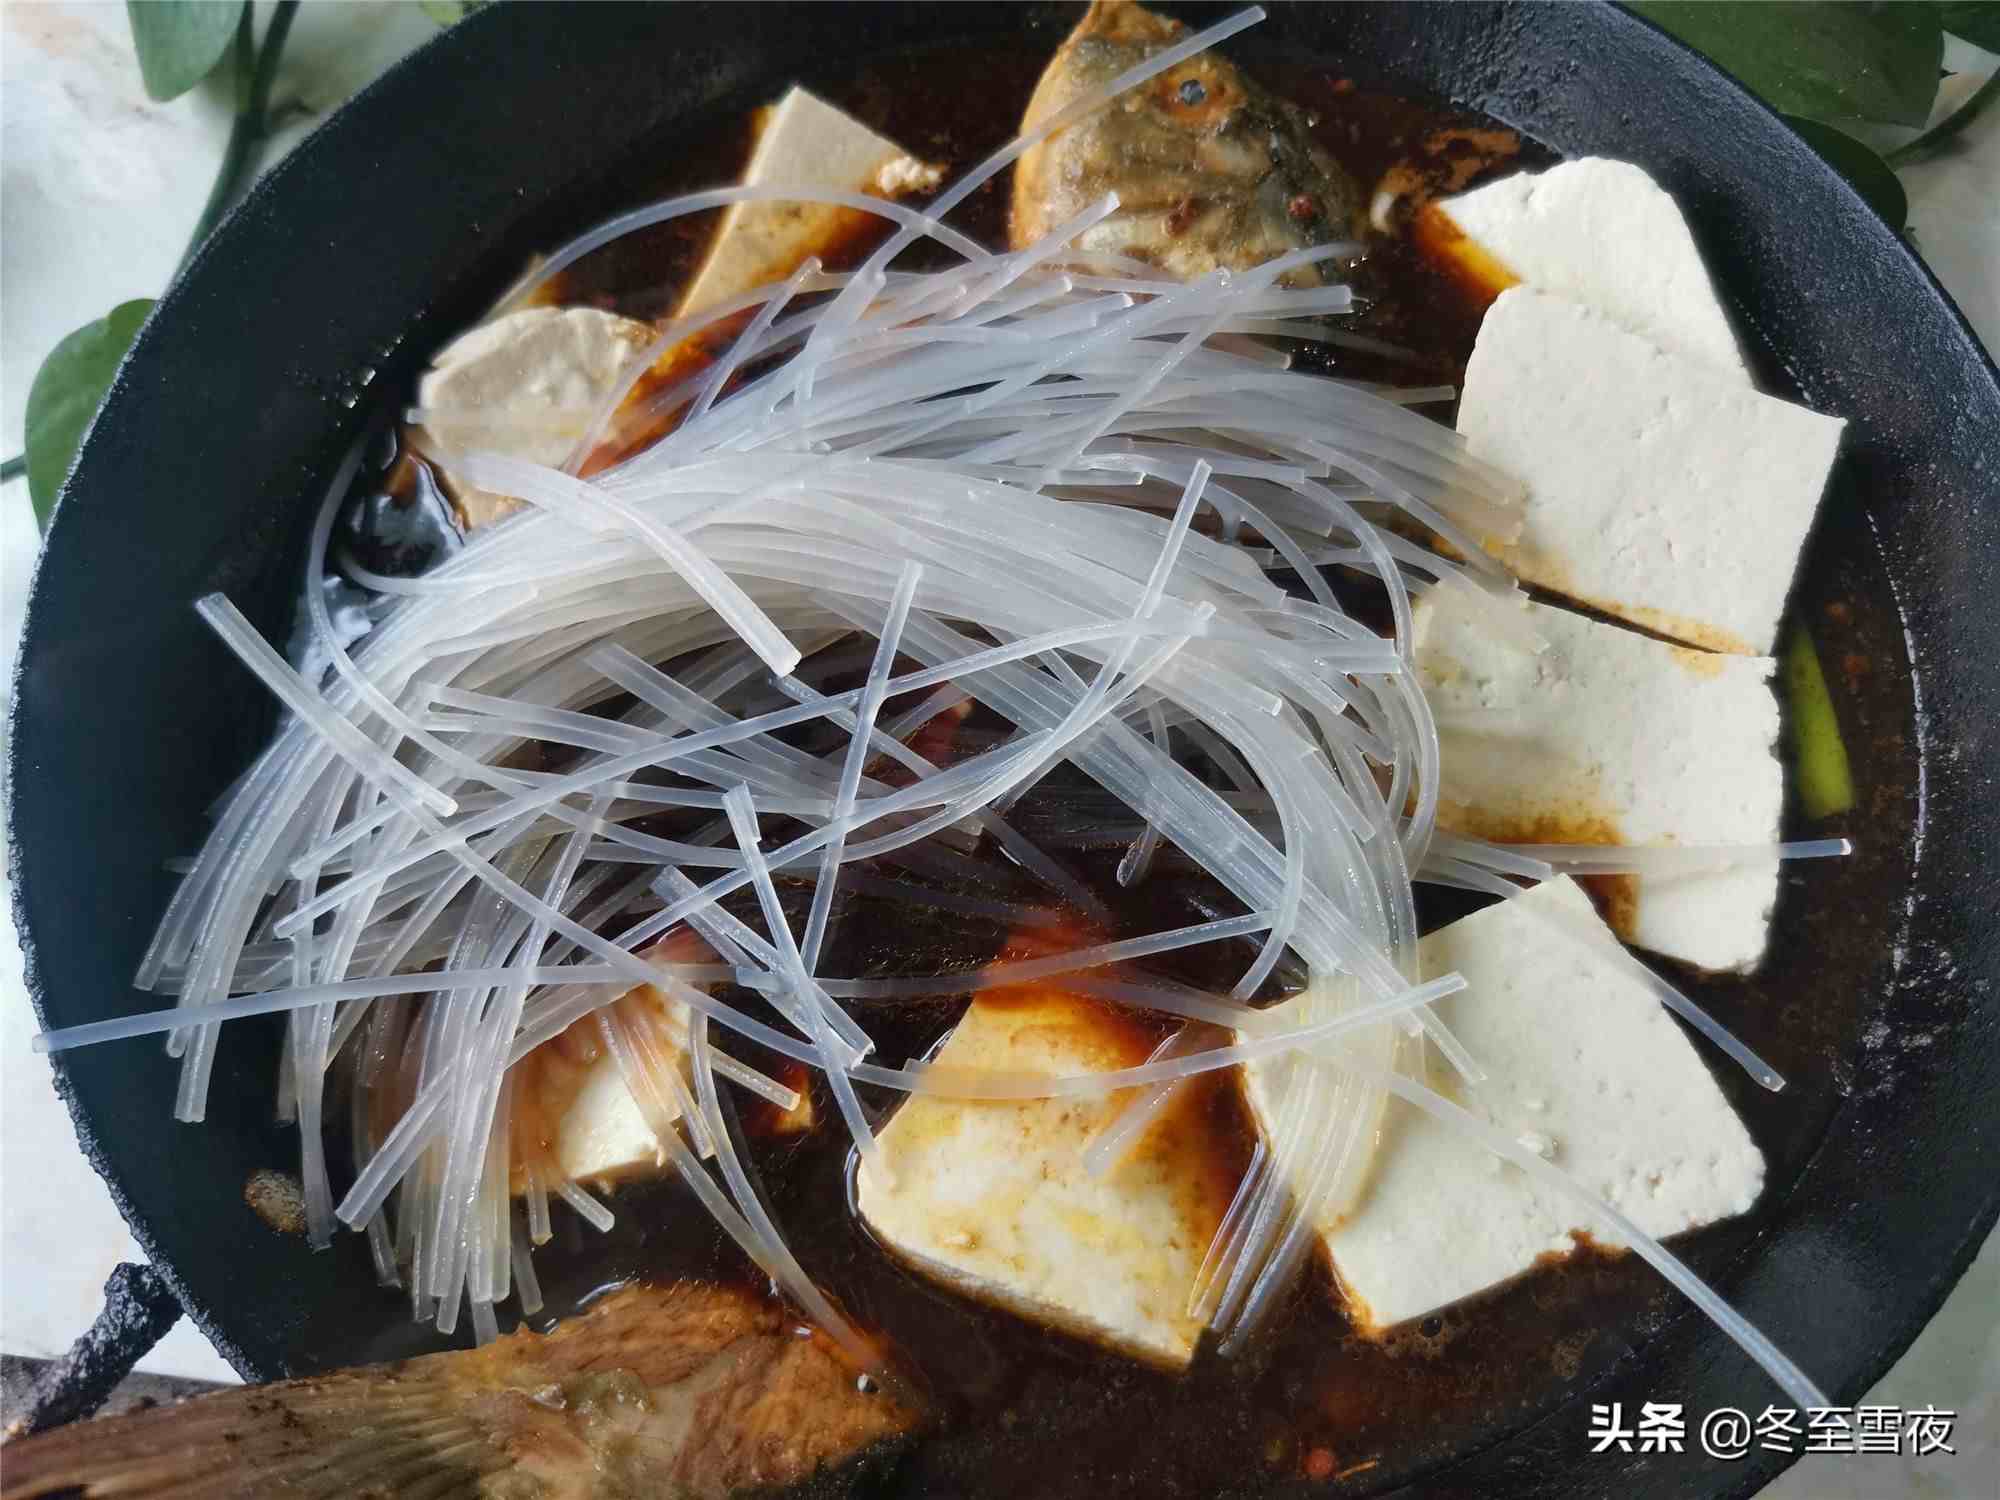 东北炖鱼的做法大全|吃东北铁锅炖鱼怎么好吃